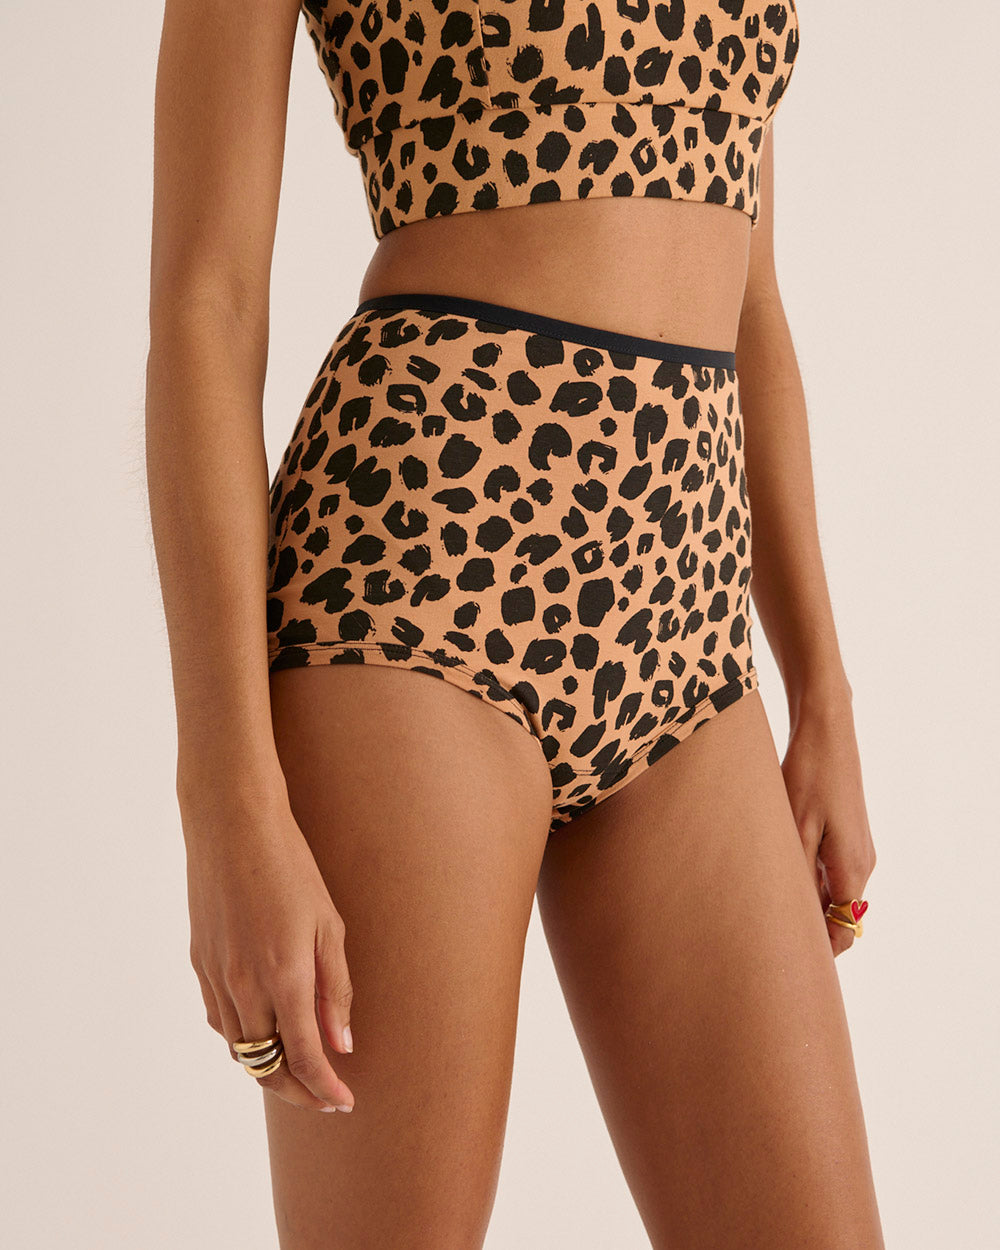 Désir leopard panties